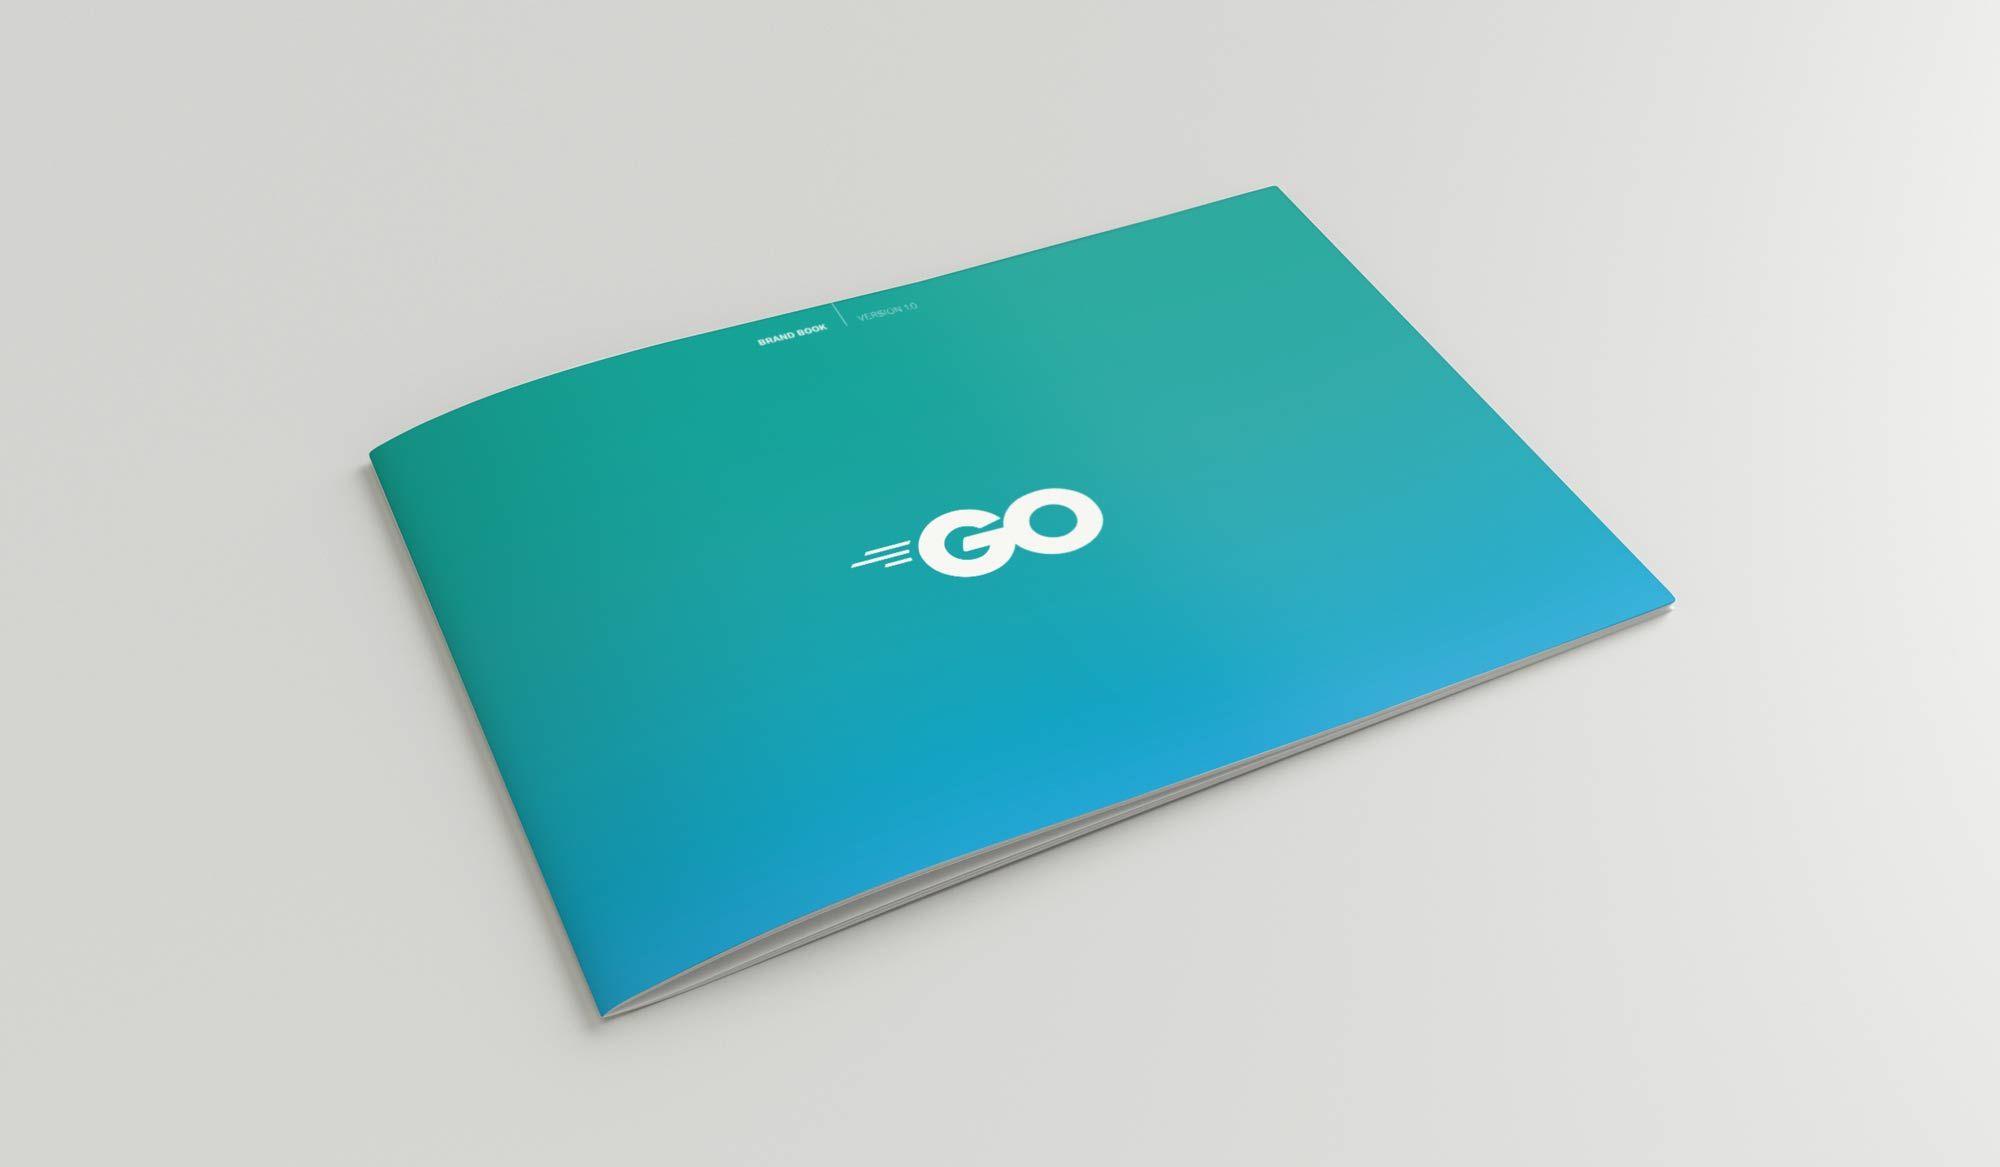 Golang Logo - Go's New Brand - The Go Blog